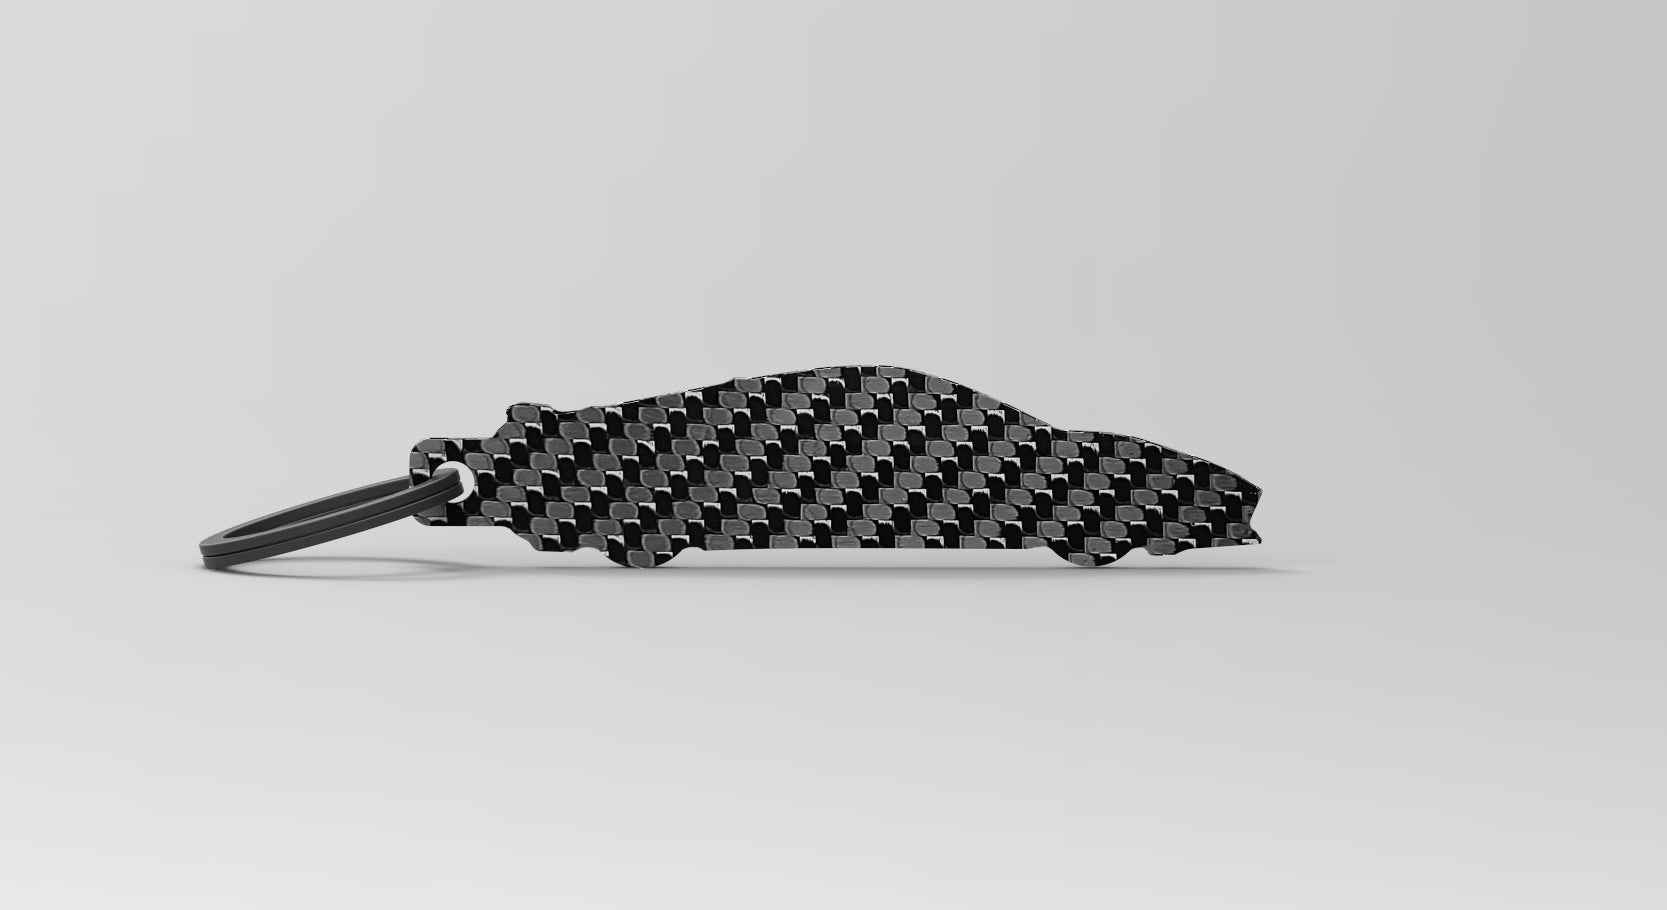 Corvette (C8) silhouette carbon fiber keychain 